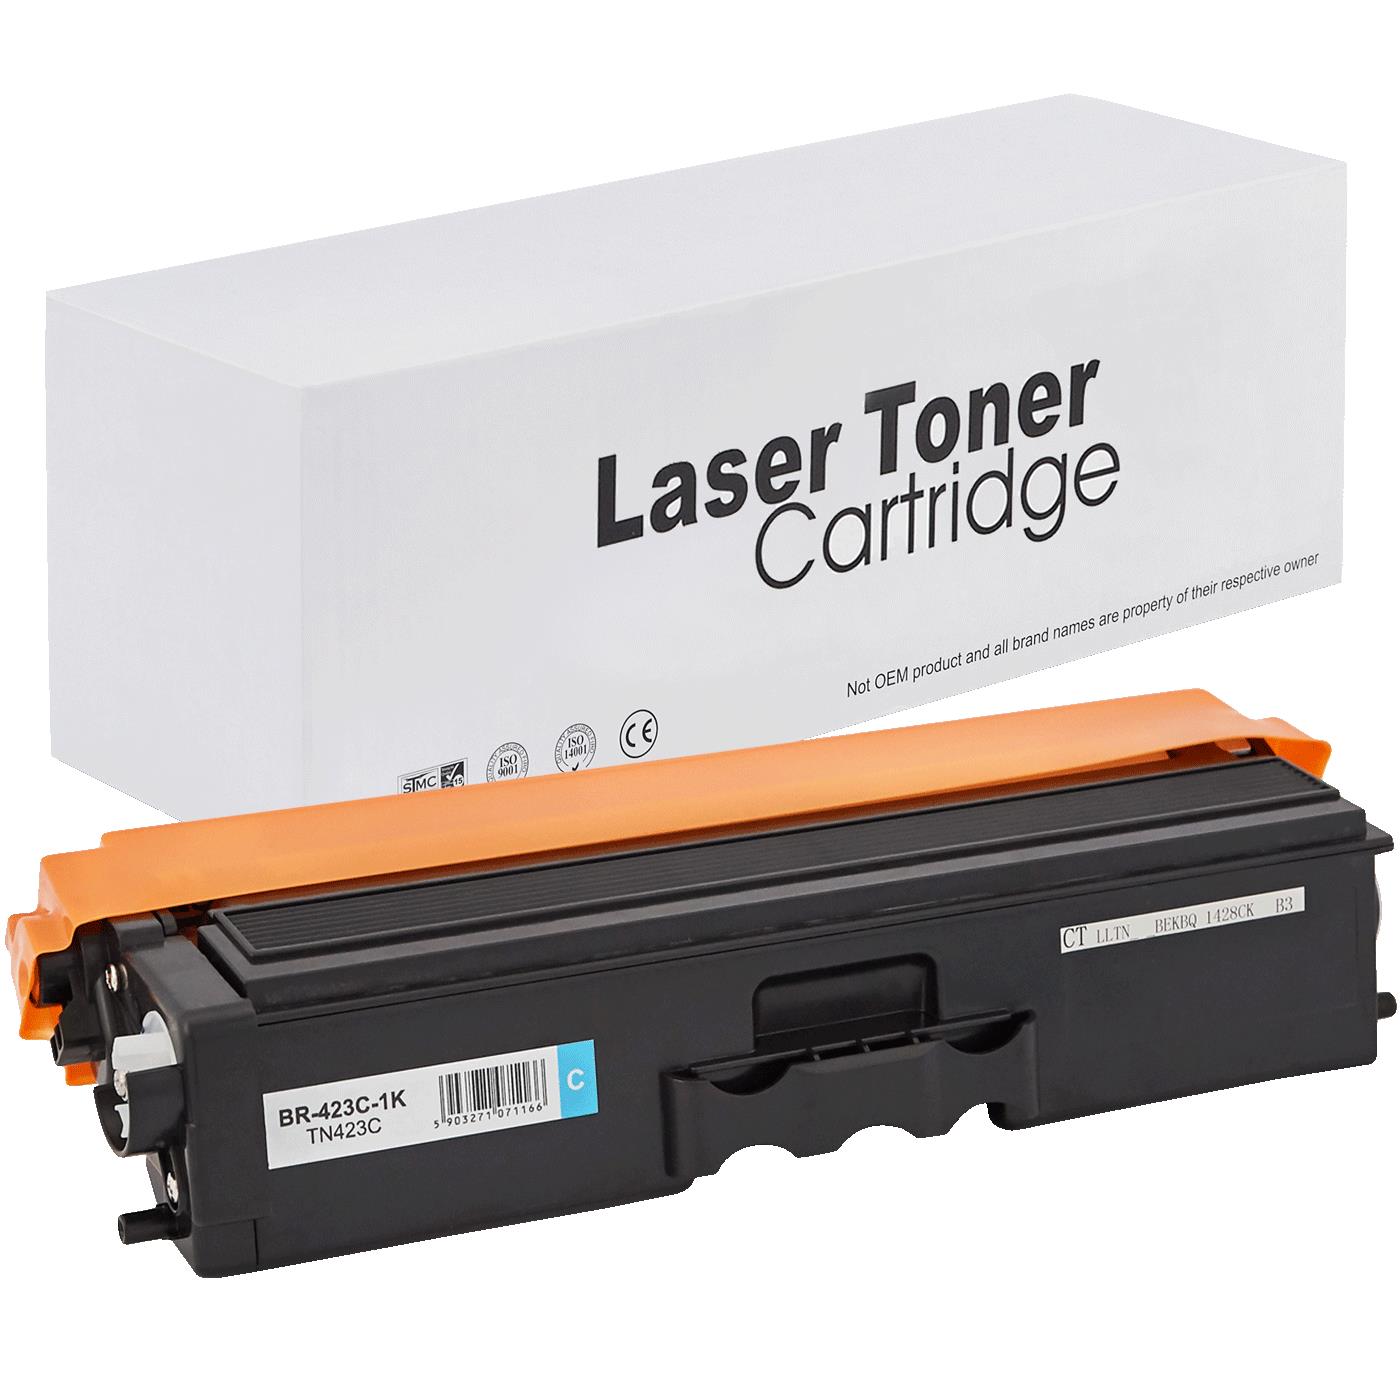 съвместима тонер касета за принтери и печатащи устройства на Brother MFC-L8900CDW Toner BR-423C | TN423C. Ниски цени, прецизно изпълнение, високо качество.